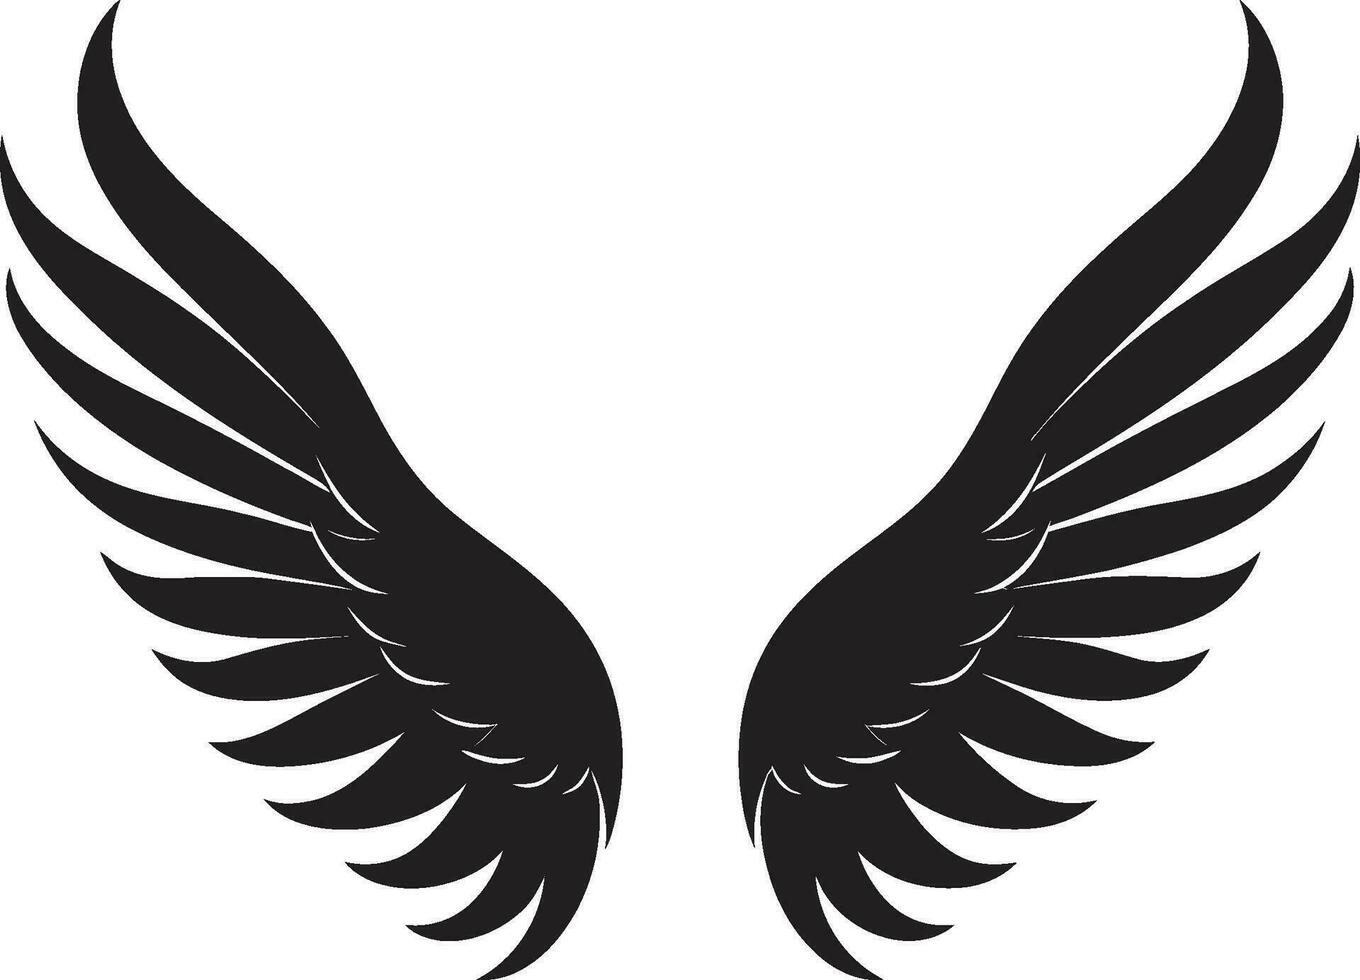 kerubic charm logotyp vektor vingar himmelsk fjädrar ängel vingar emblem